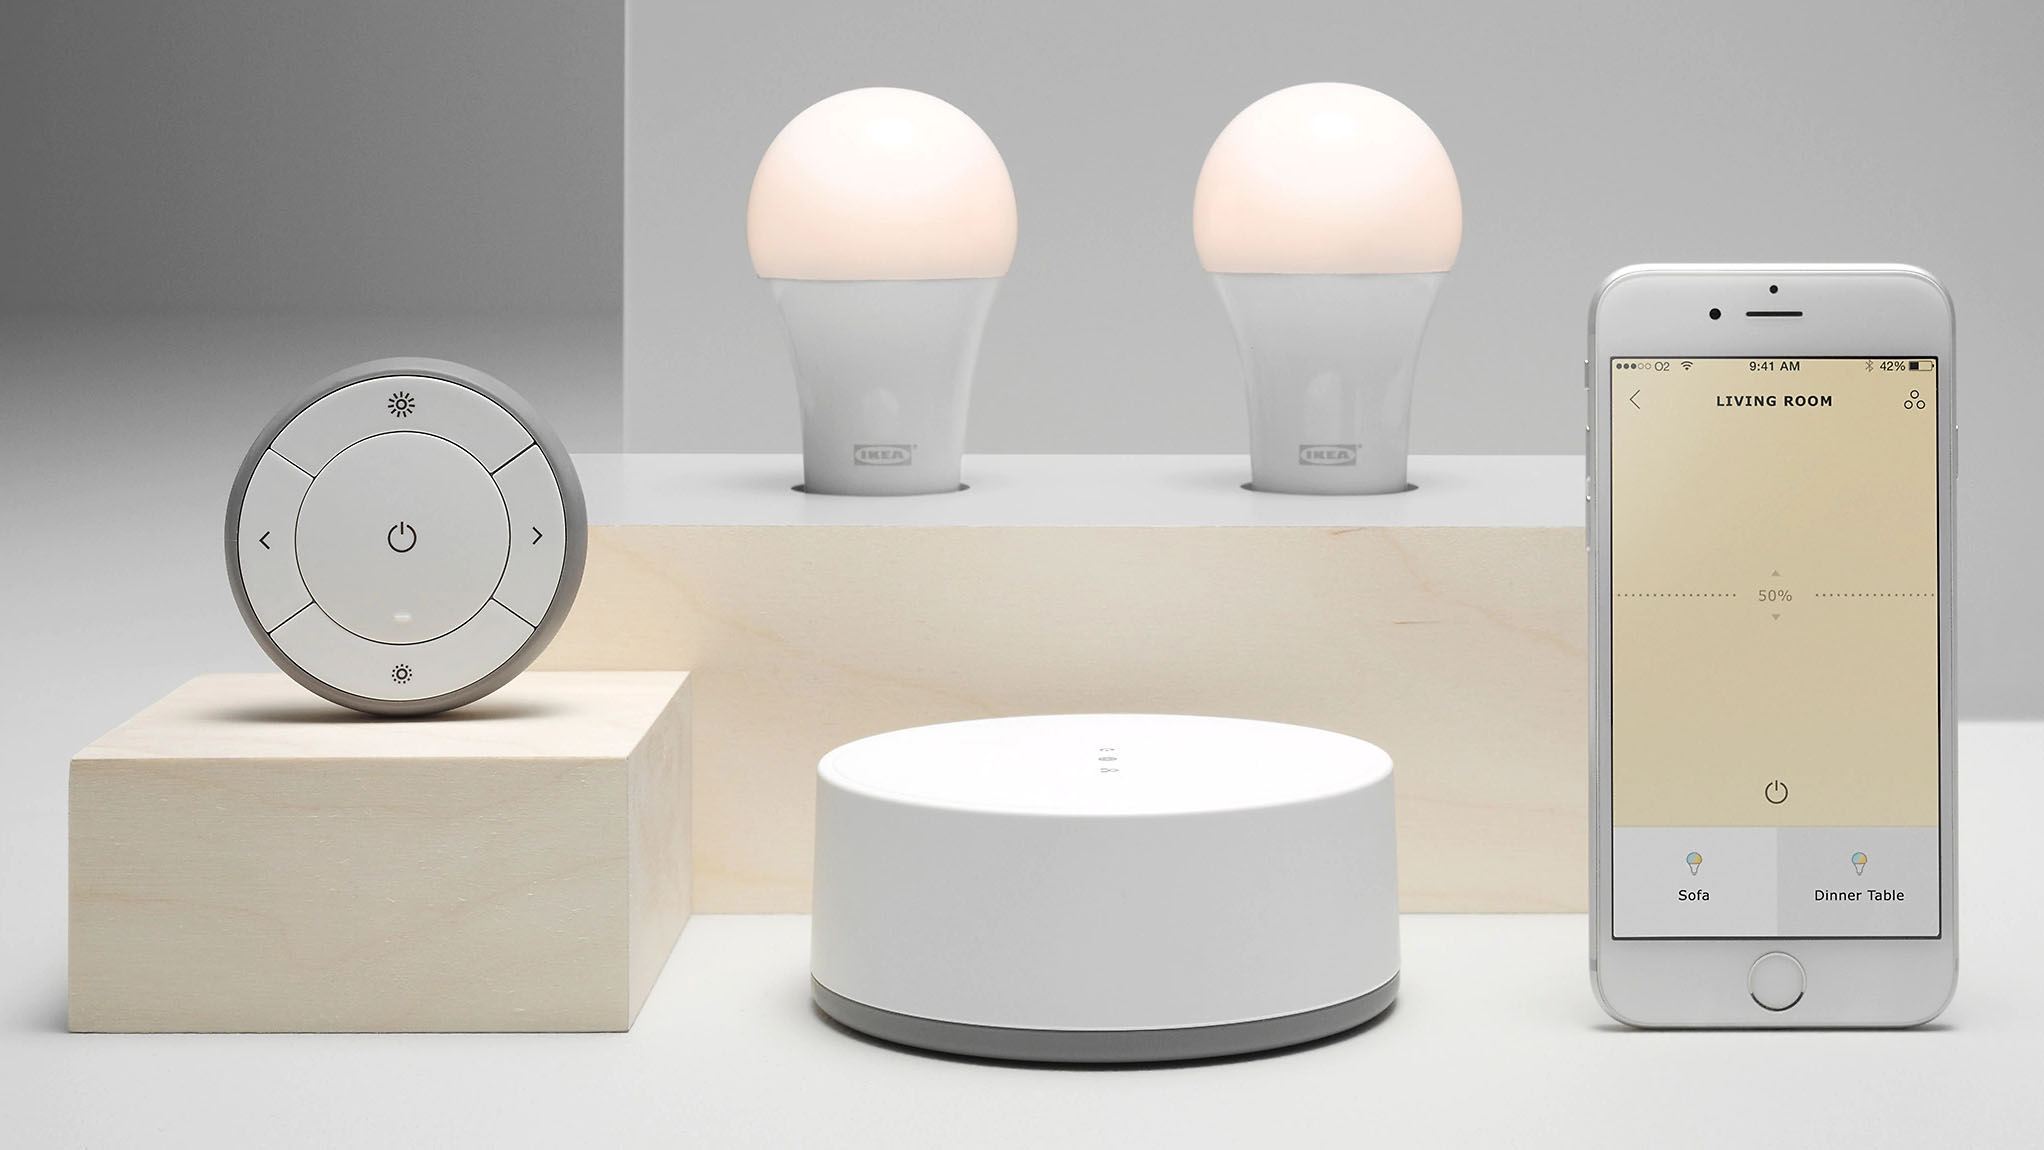 Produkter i IKEA Trådfri-serien står uppställda på ett vitt bord.